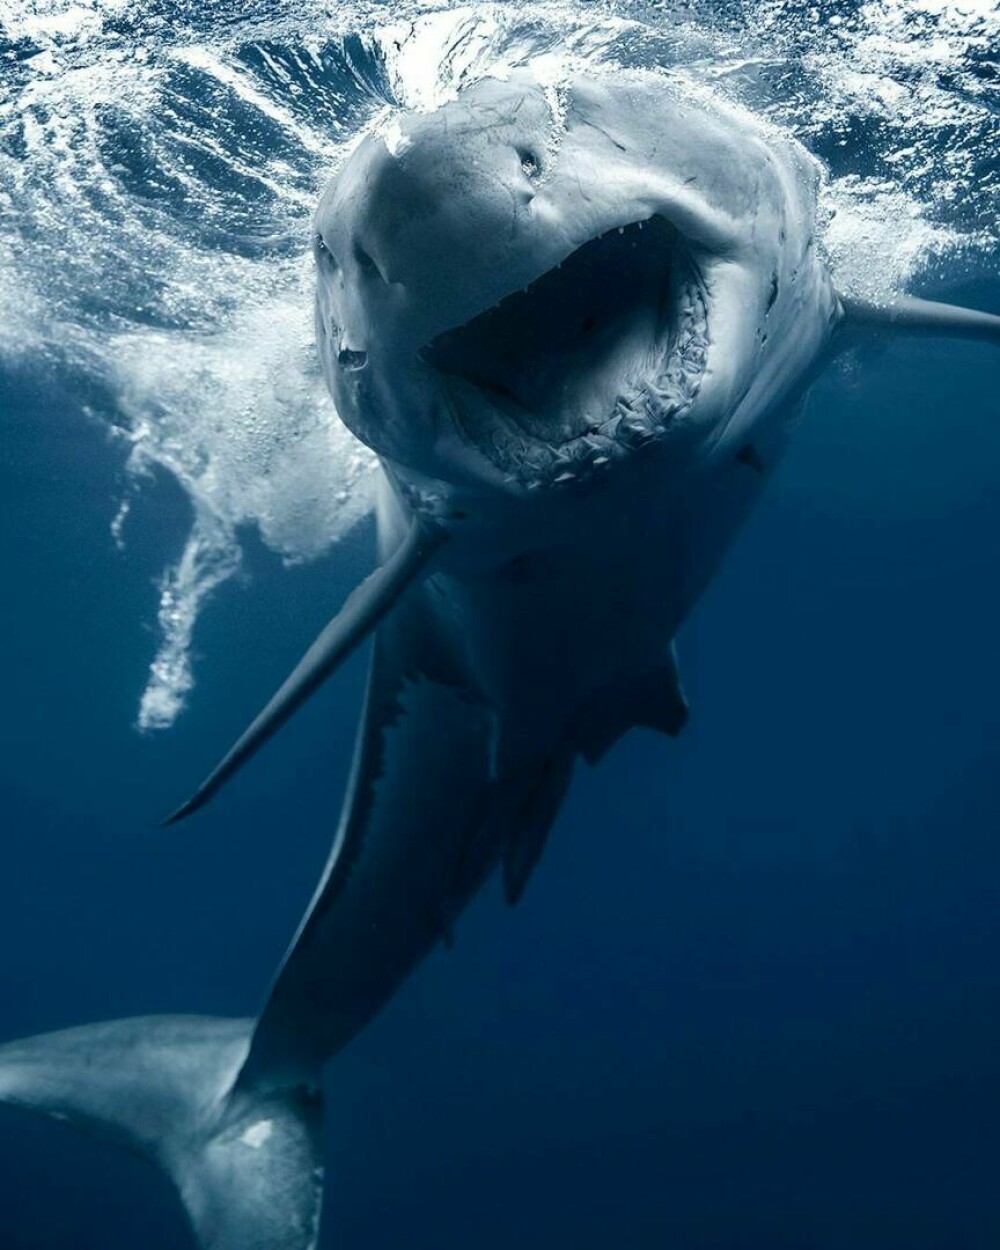 Imagini uimitoare surprinse de supraviețuitorul atacului unui rechin. Fotografiază prădătorii de aproape | GALERIE FOTO - Imaginea 15